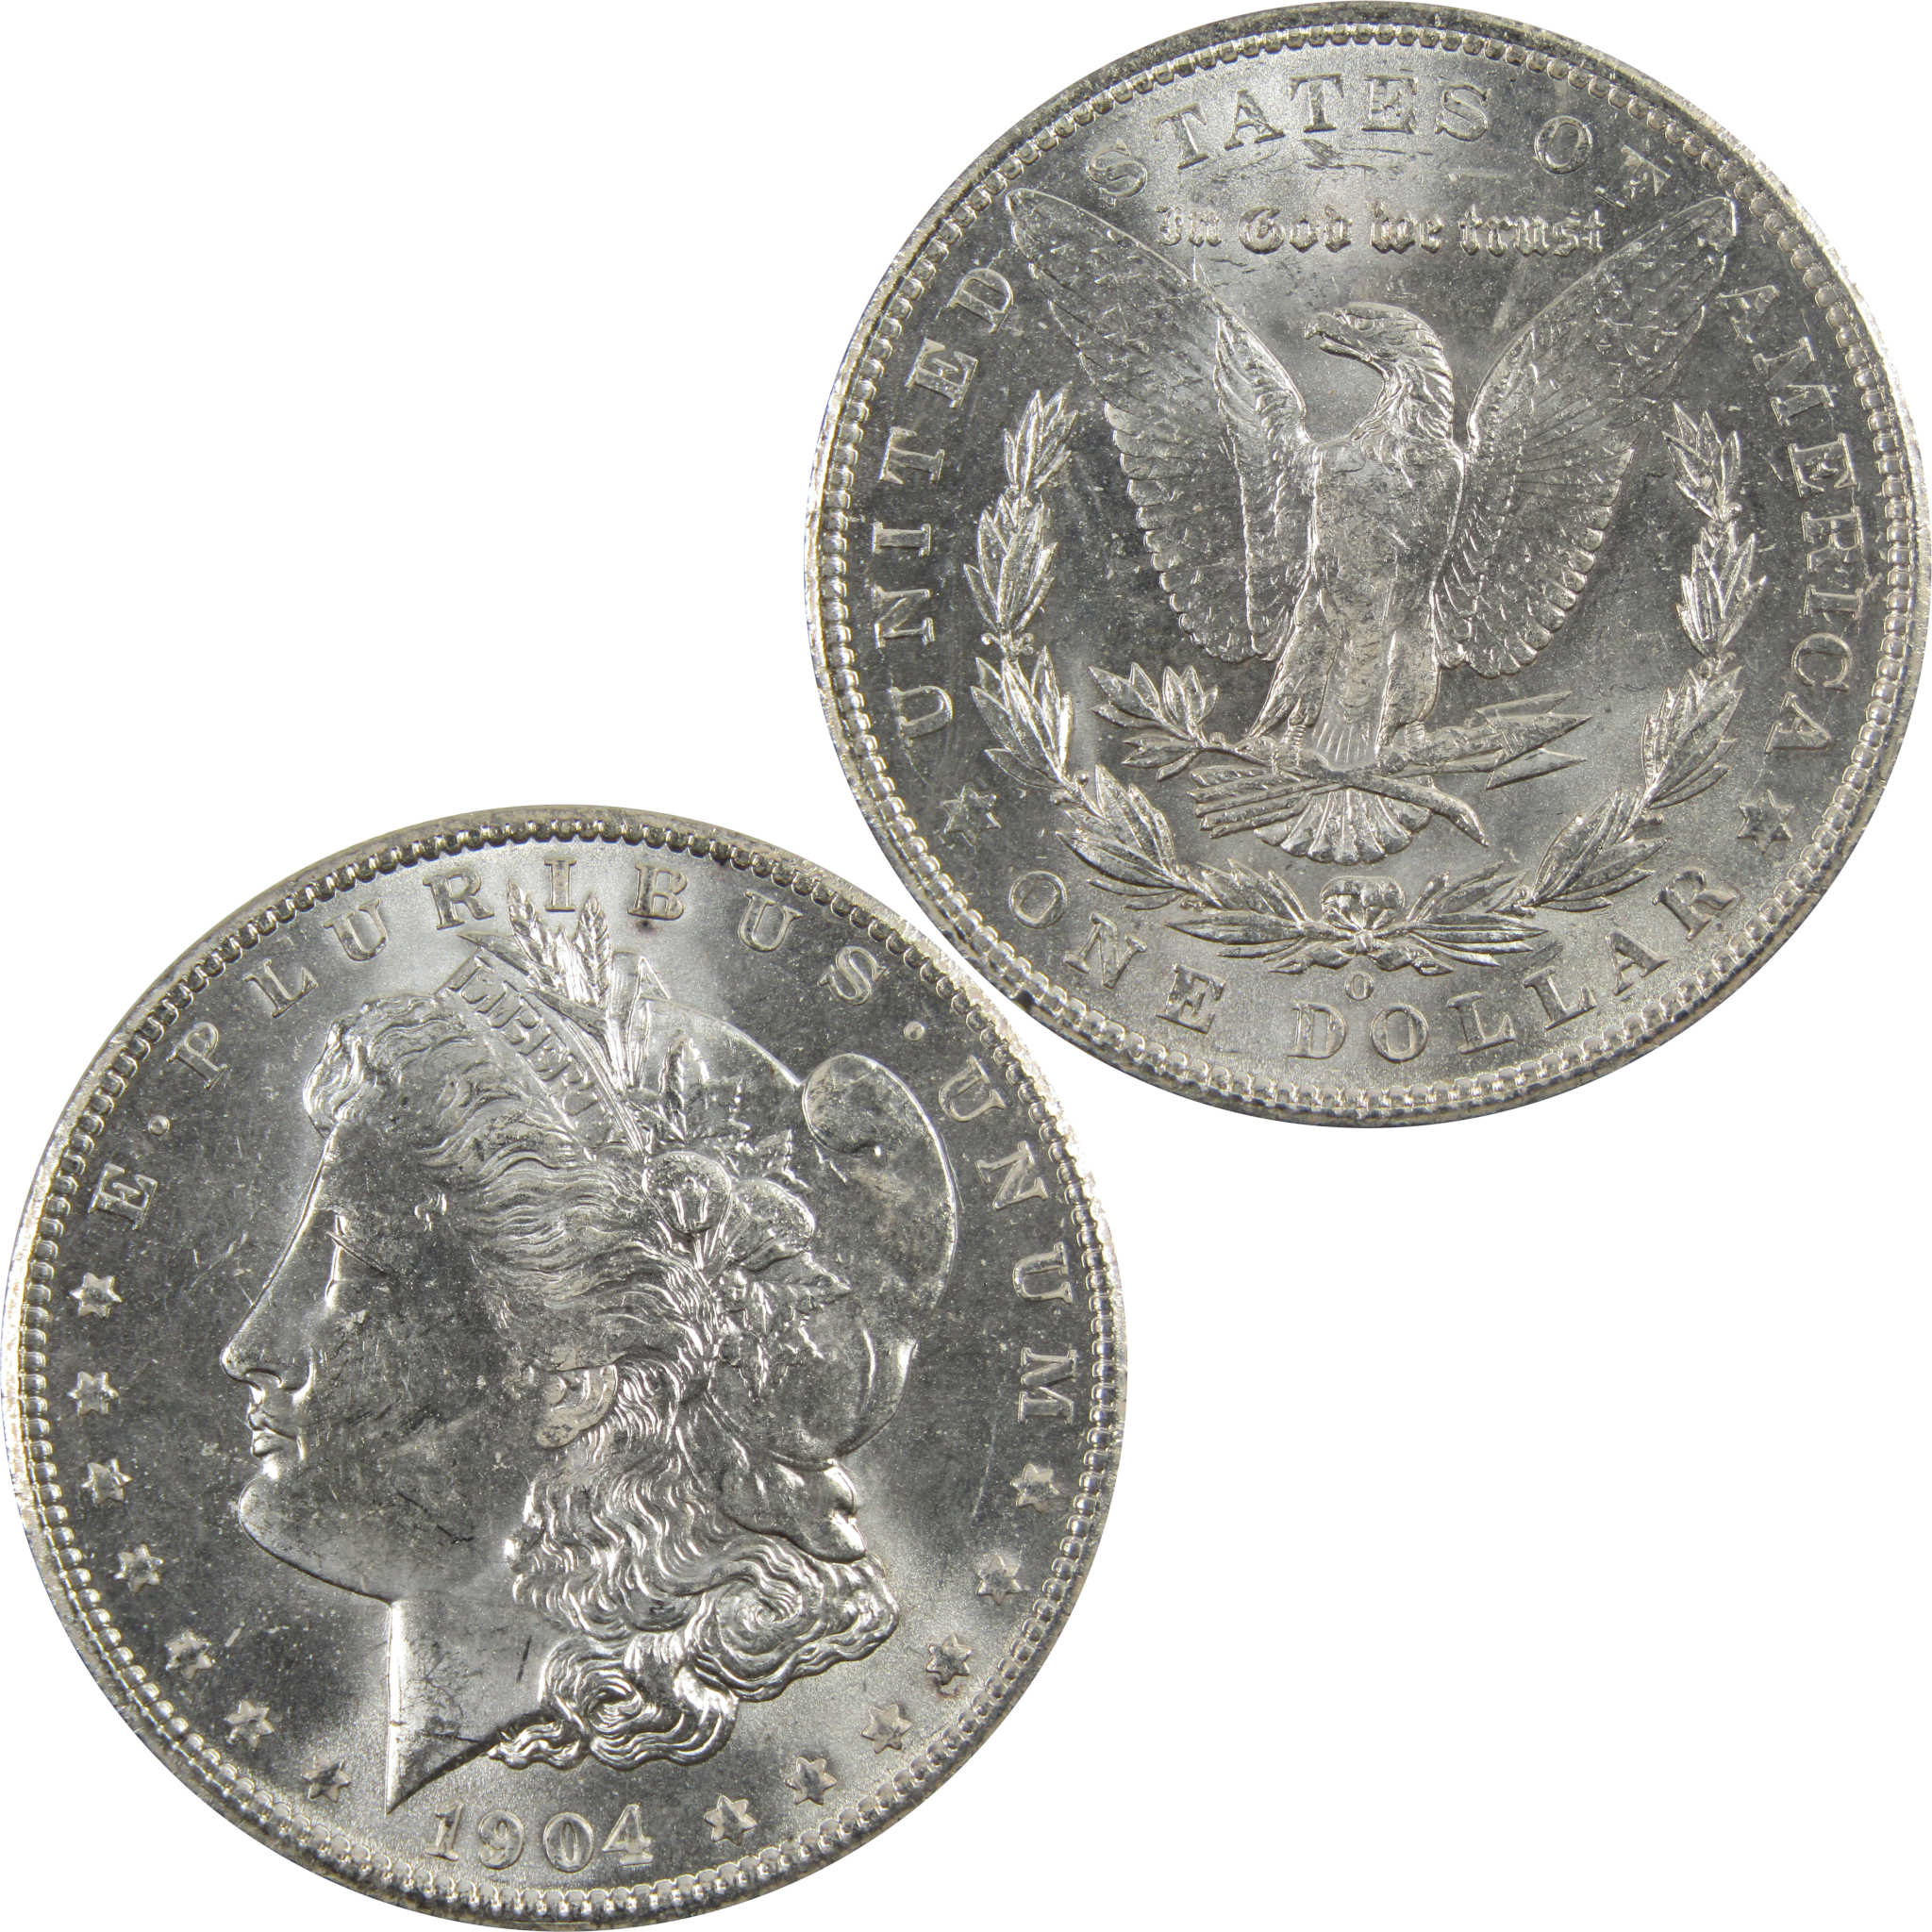 1904 O Morgan Dollar BU Uncirculated 90% Silver $1 Coin SKU:I5280 - Morgan coin - Morgan silver dollar - Morgan silver dollar for sale - Profile Coins &amp; Collectibles